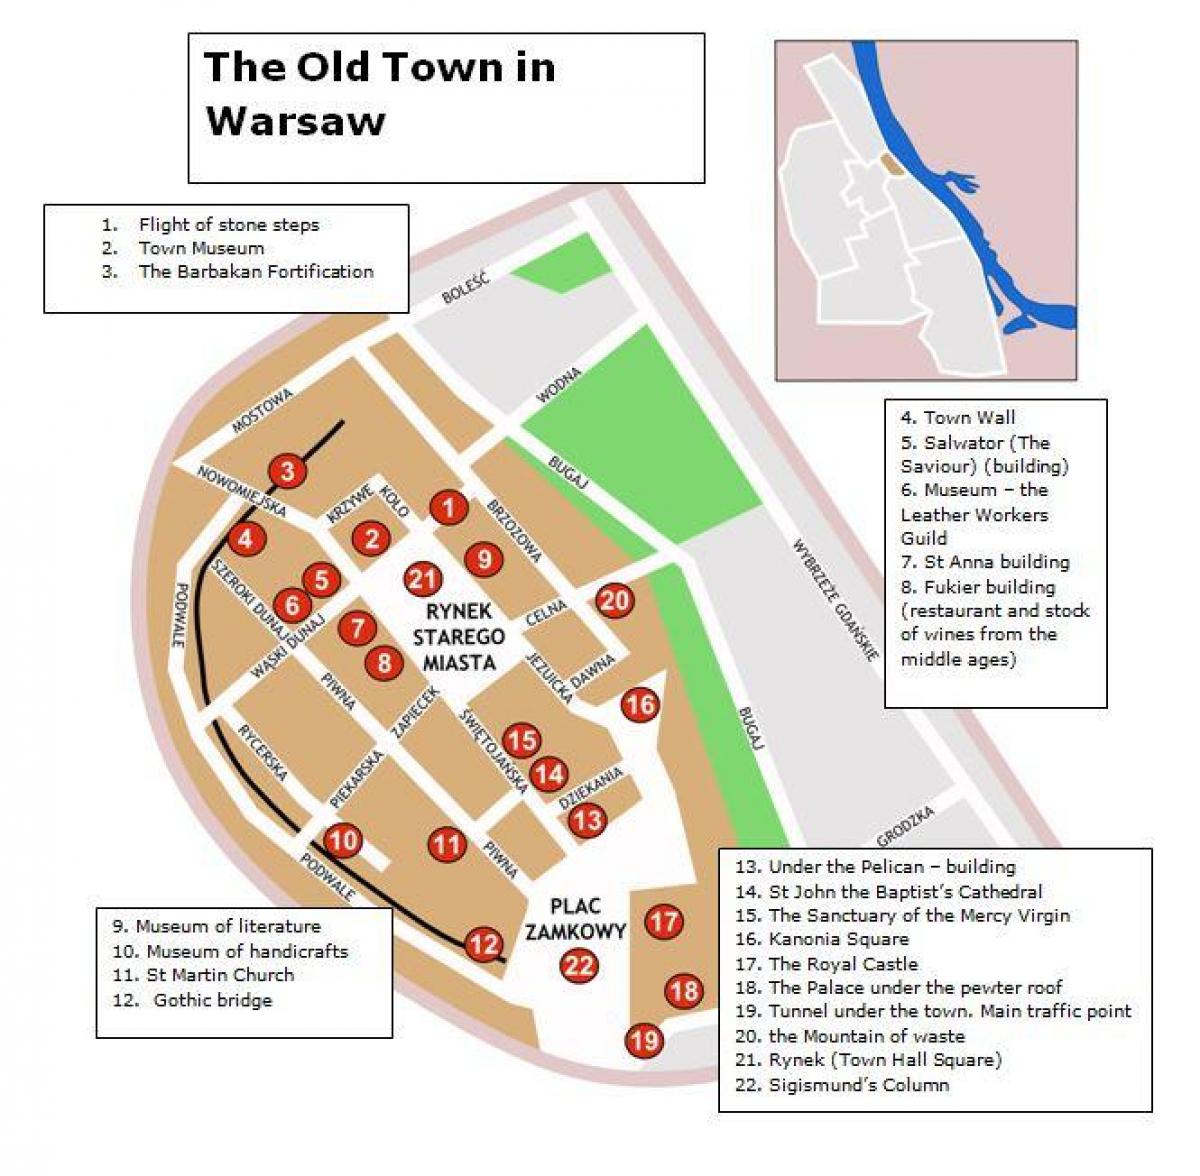 ورشو نقشه شهر قدیمی